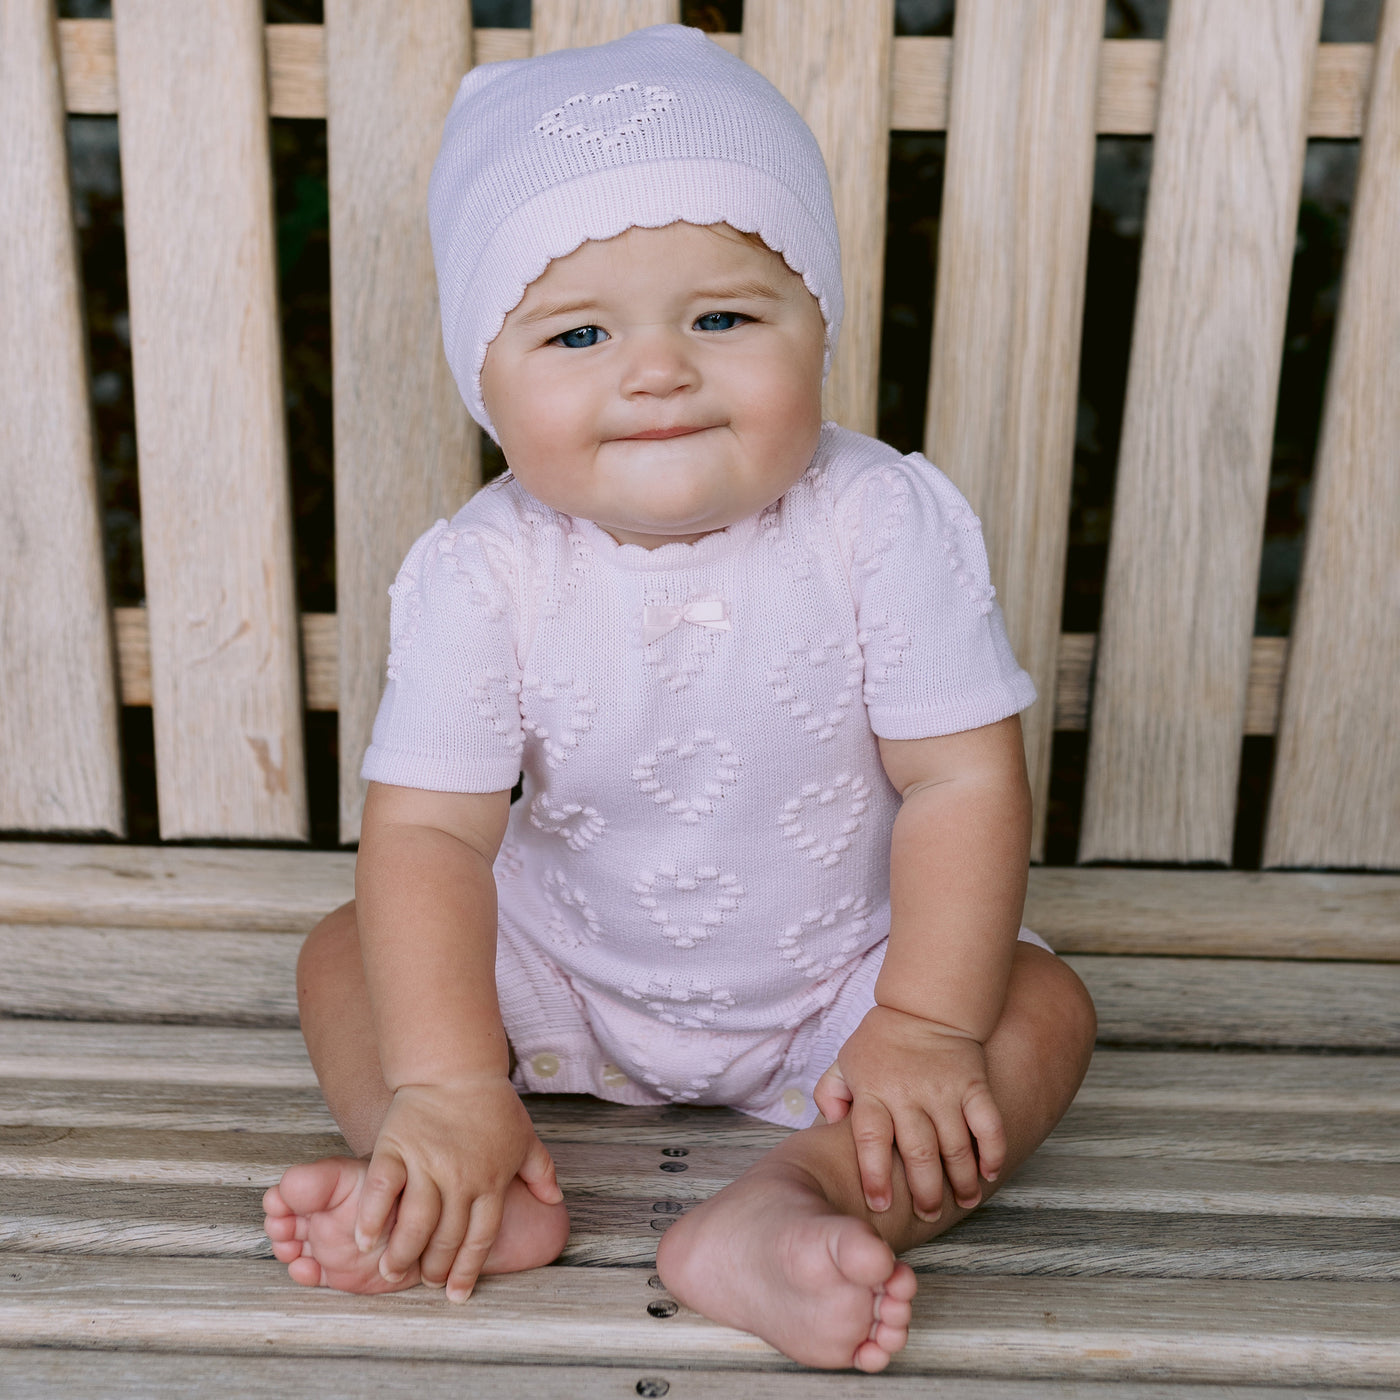 Dory Knit Baby-Mädchen-Strampler und Mütze